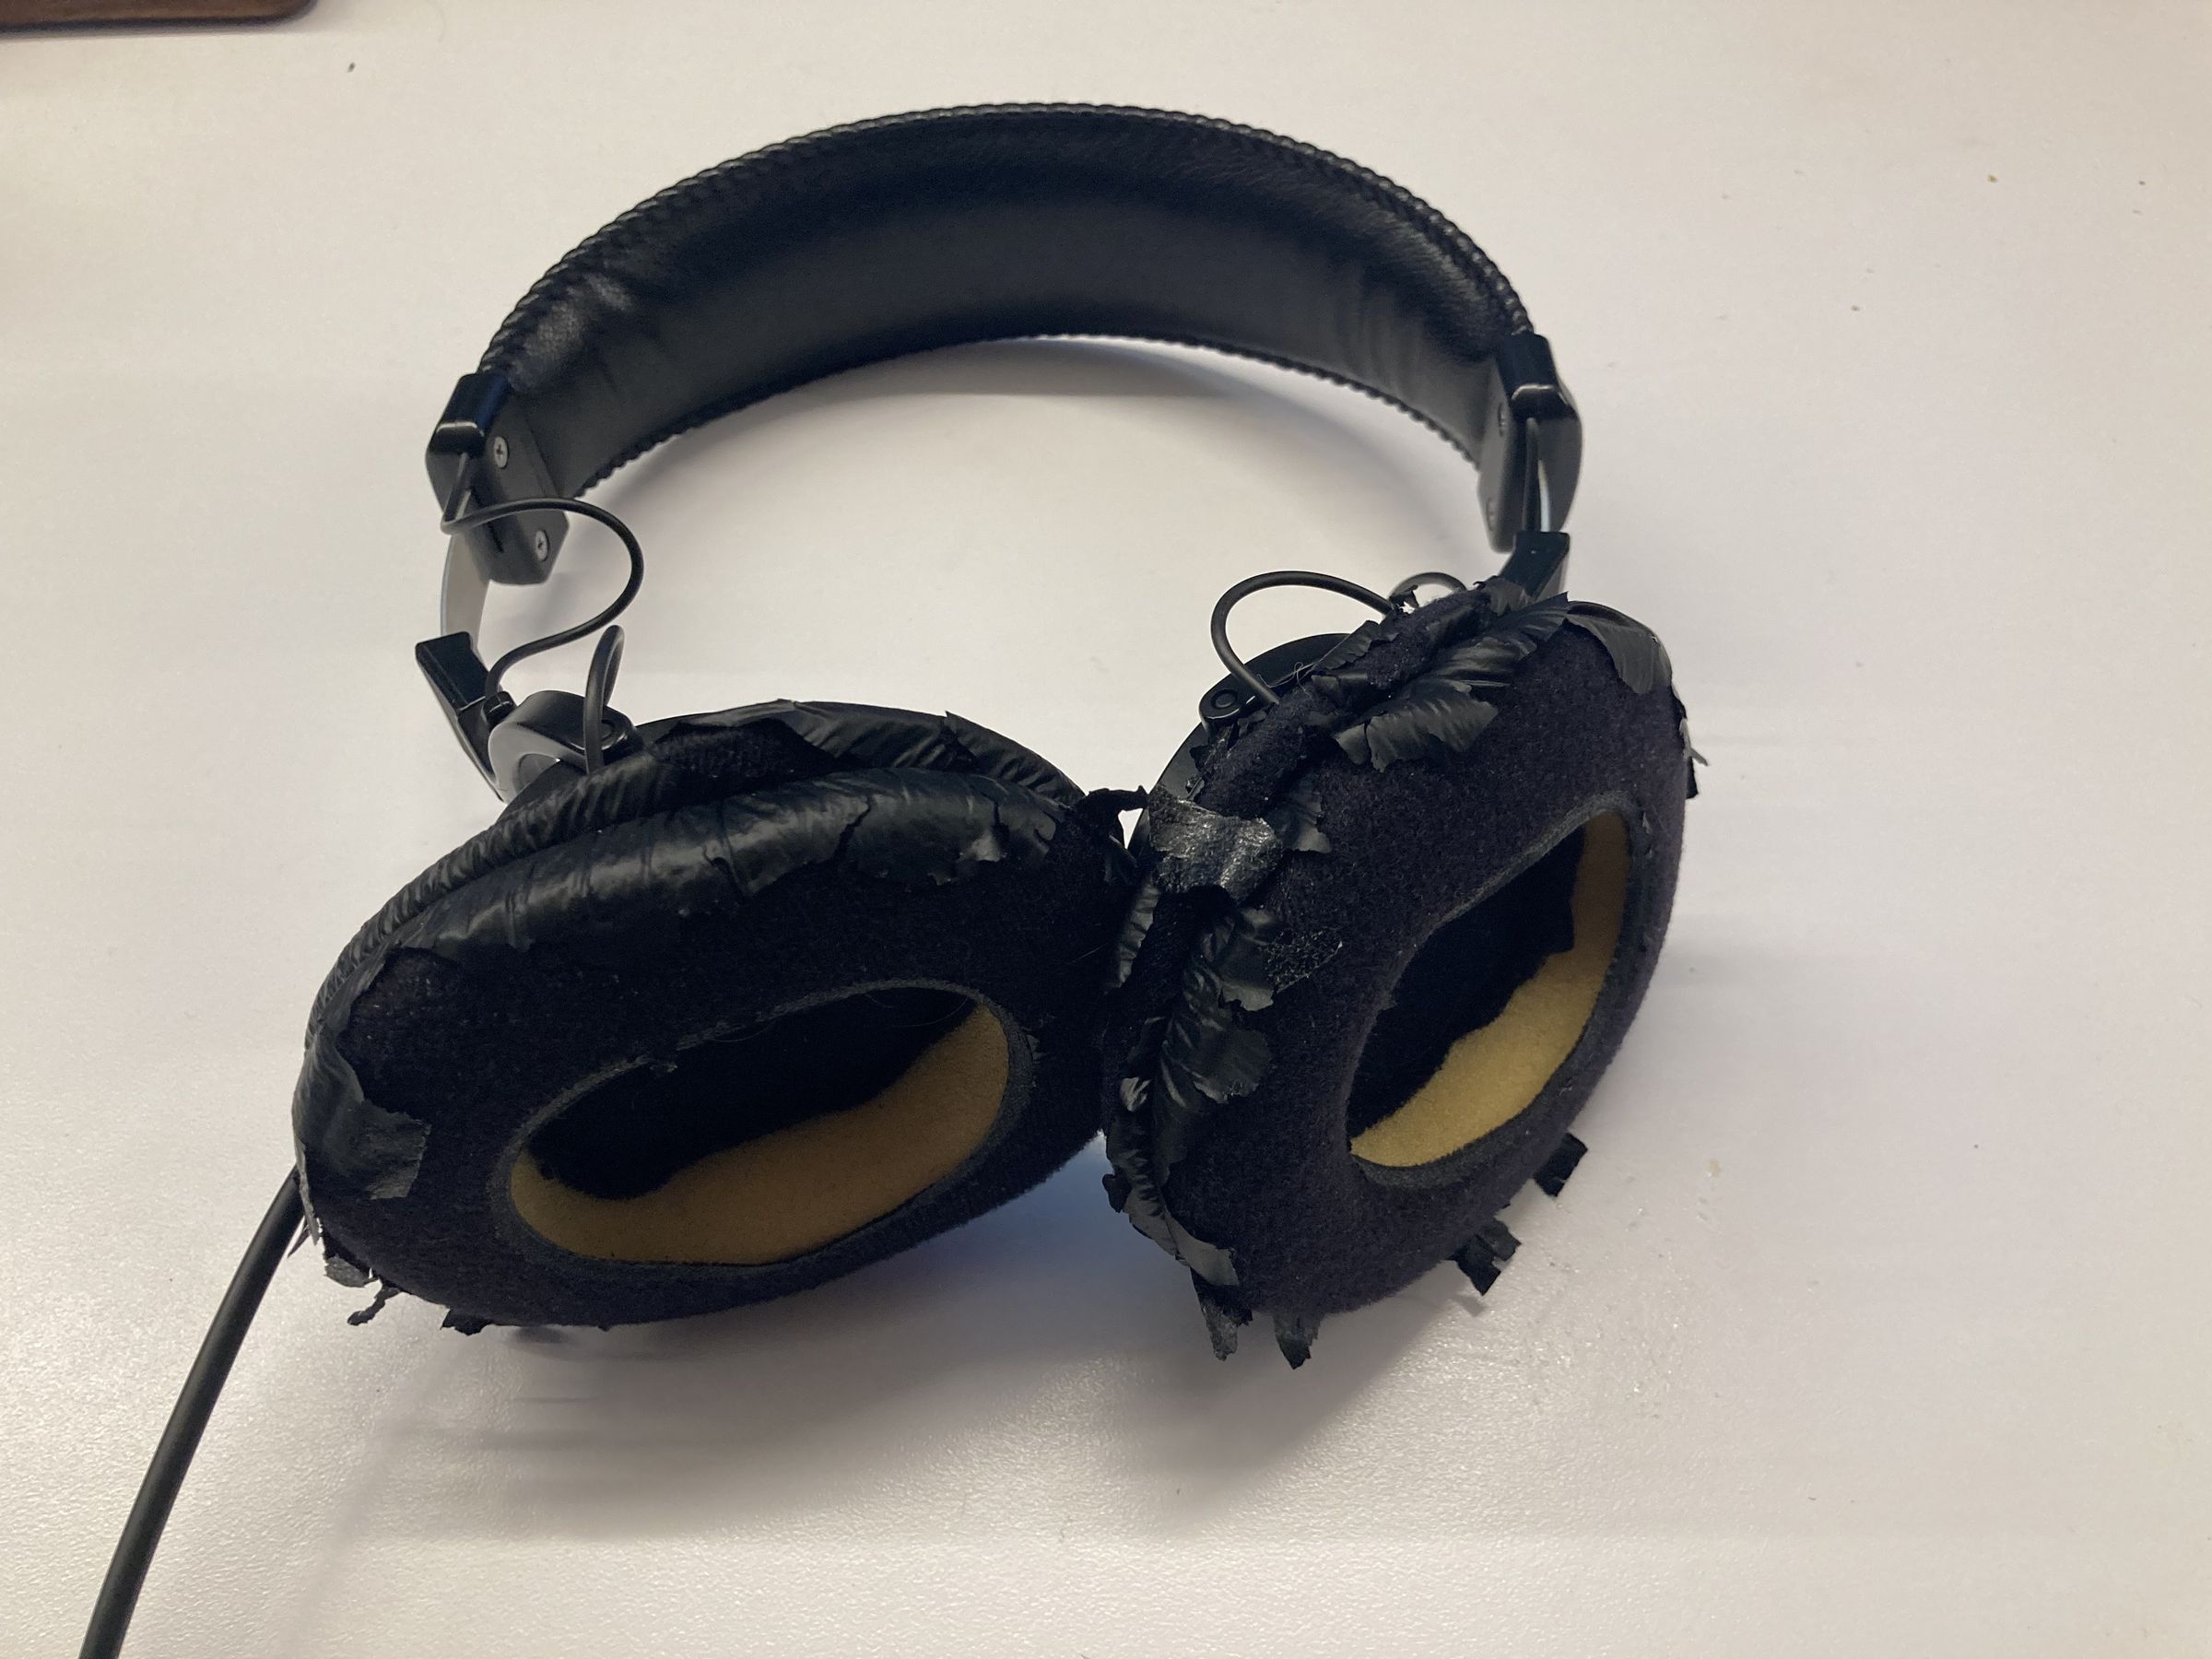 Ein Paar Sony MDR-7506 mit stark beschädigten Kopfhörerpolstern.